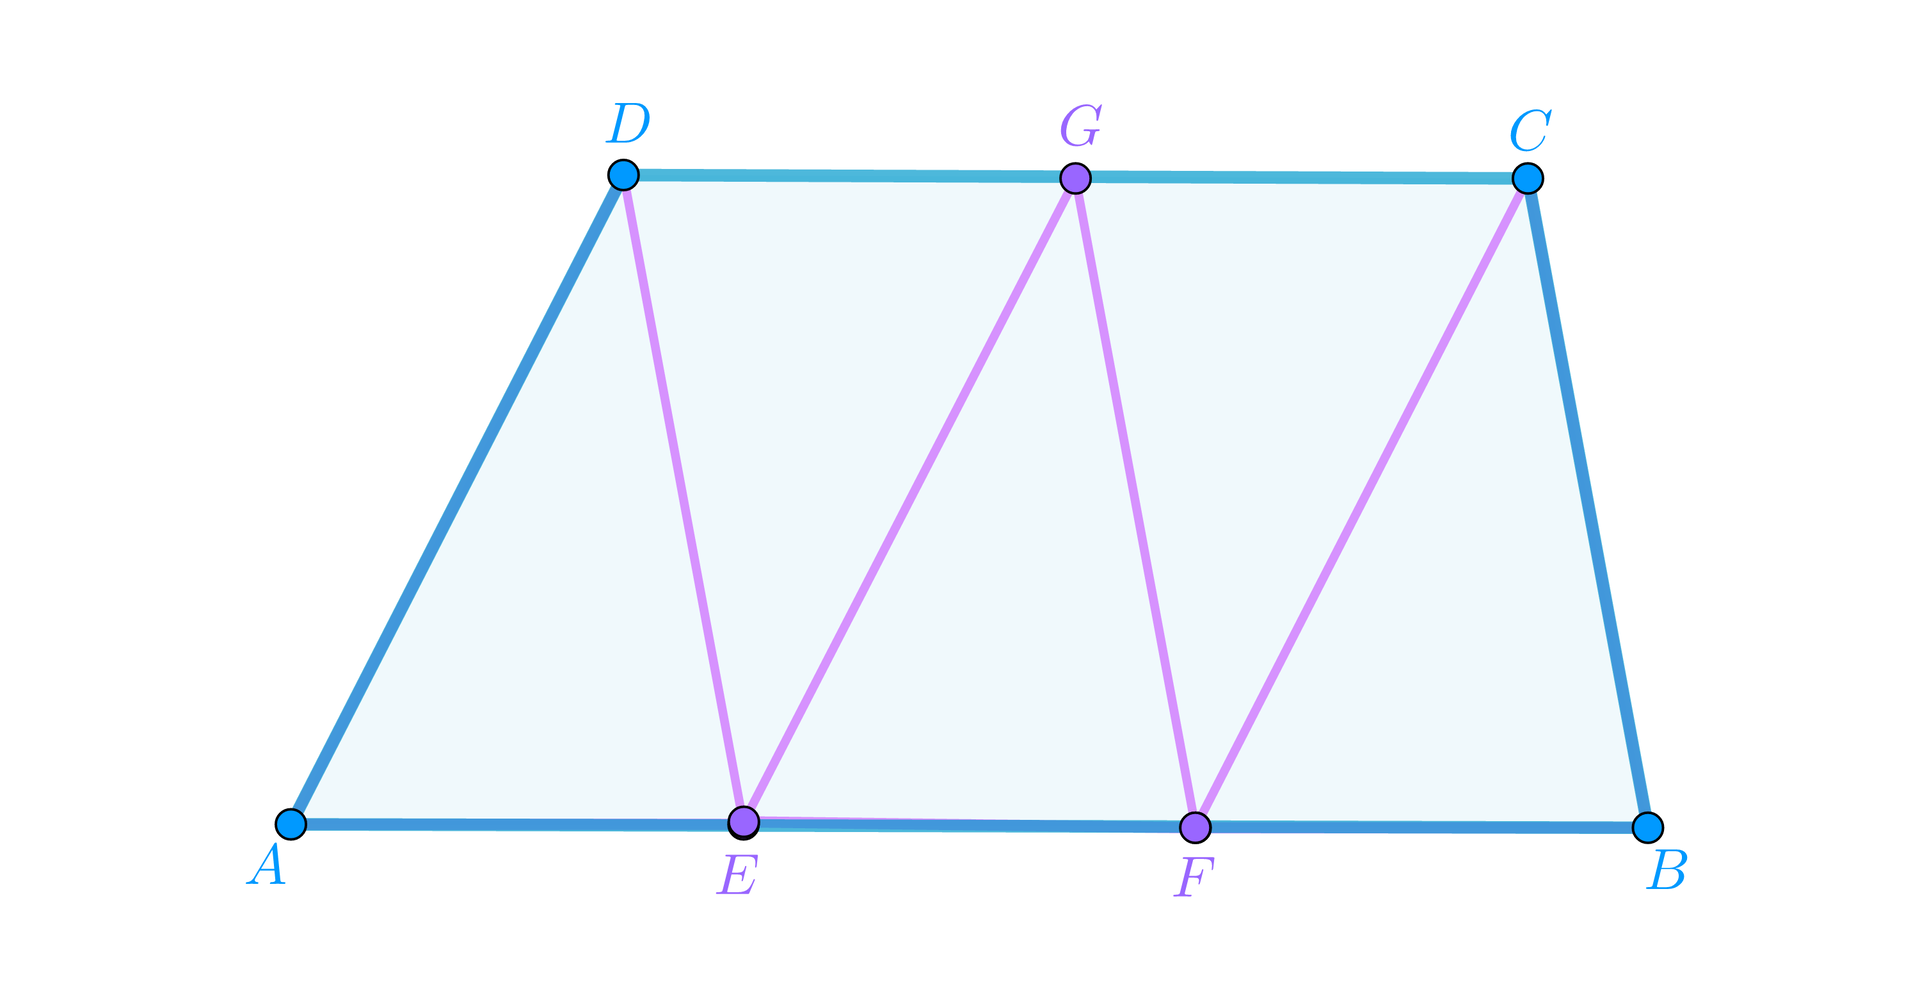 Na ilustracji znajduje się trapez. Trapez posiada wierzchołki A, B, C oraz D. Pomiędzy wierzchołkami A i B znajdują się punkty E oraz F. Pomiędzy wierzchołkami D i C znajduje się punkt G. W środku trapezu znajdują się linie, łączące ze sobą punkty. D połączone jest z E. E połączone jest z G. G połączone jest z F. F połączone jest z C.